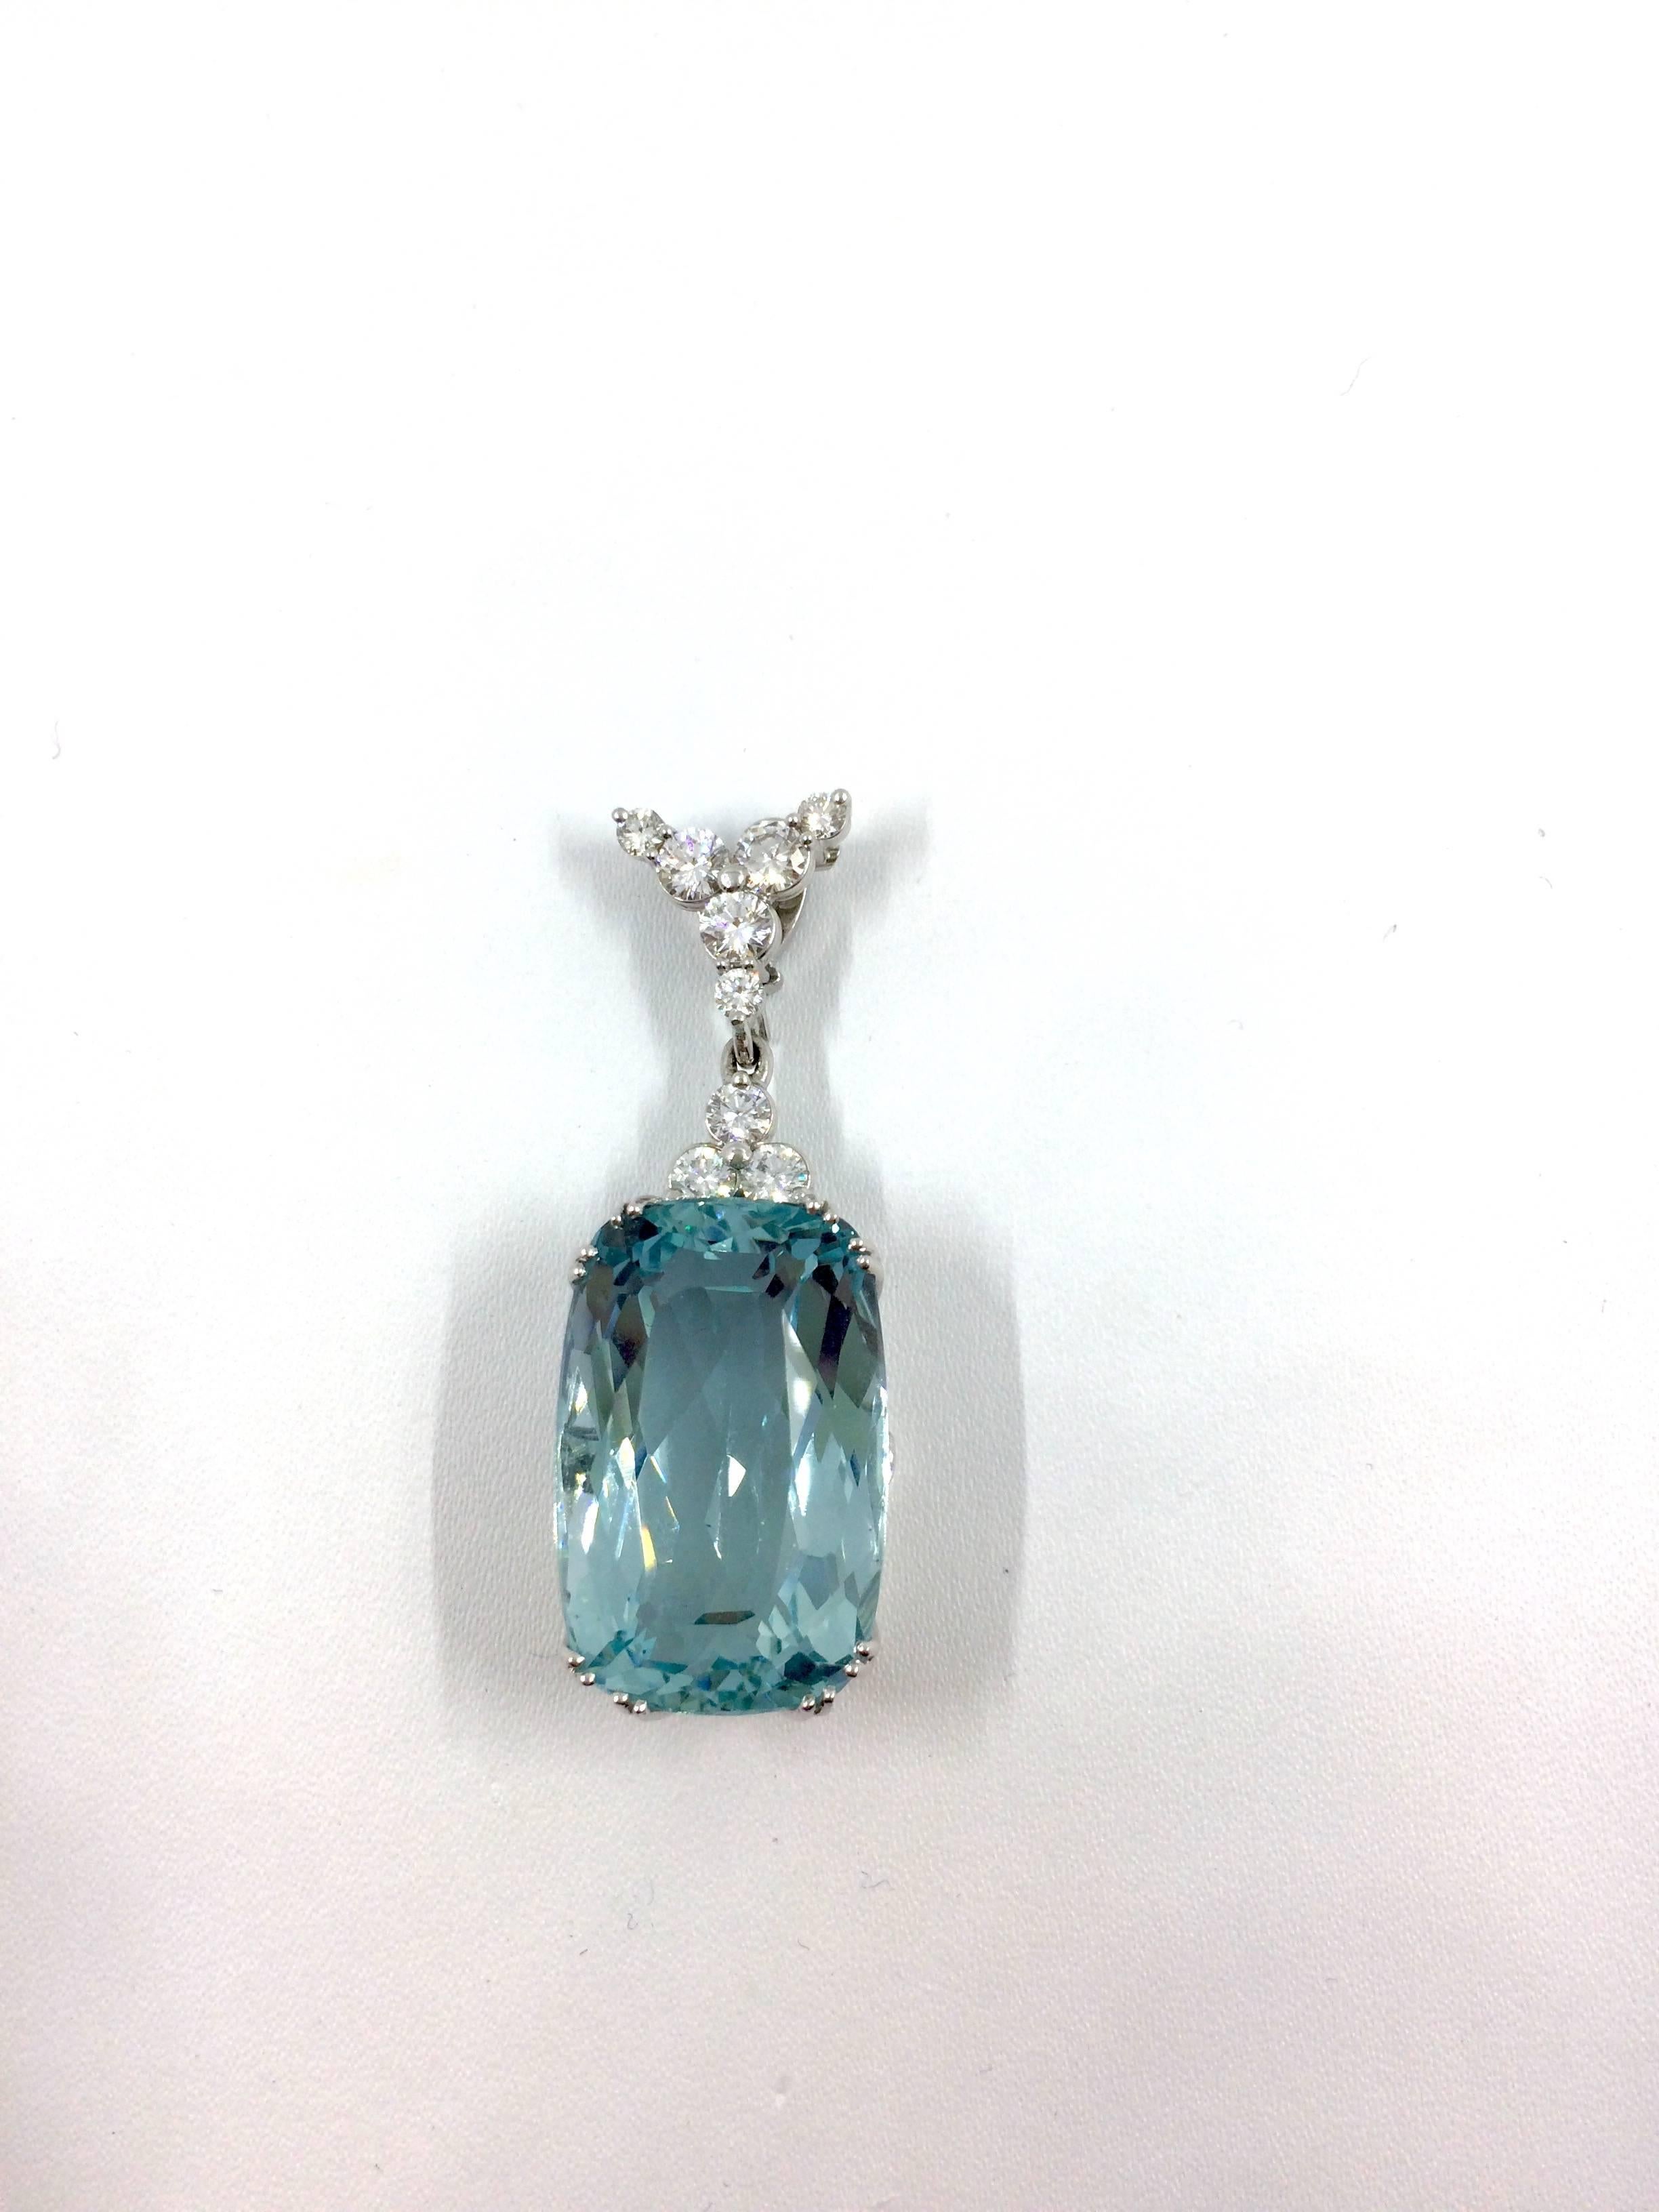 32.59 Carat Santa Maria Aquamarine Diamond Pendant For Sale 3